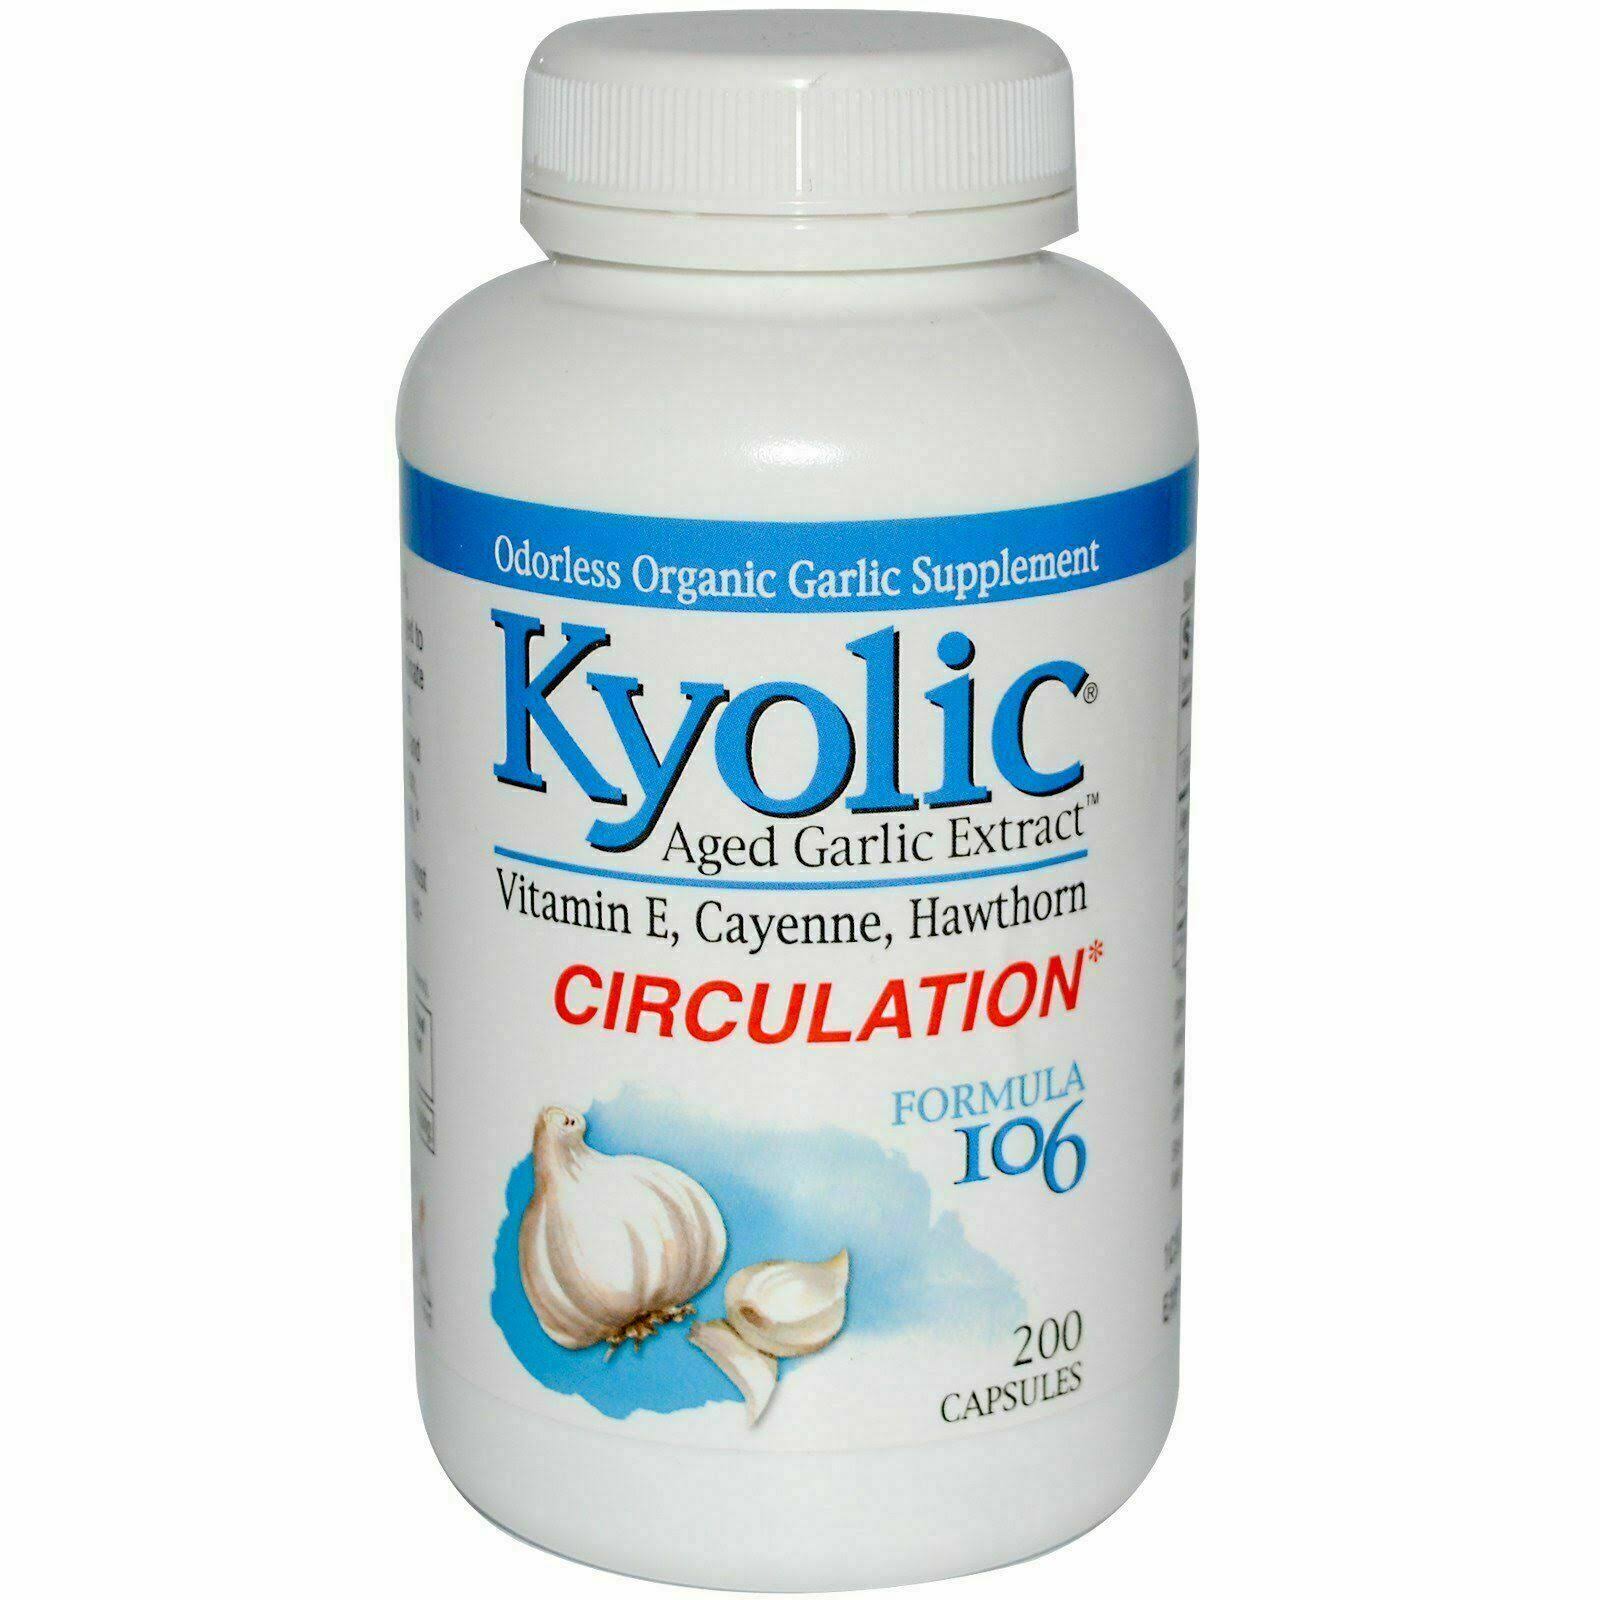 Kyolic Aged Garlic Extract, Circulation, Formula 106, 200 Capsules